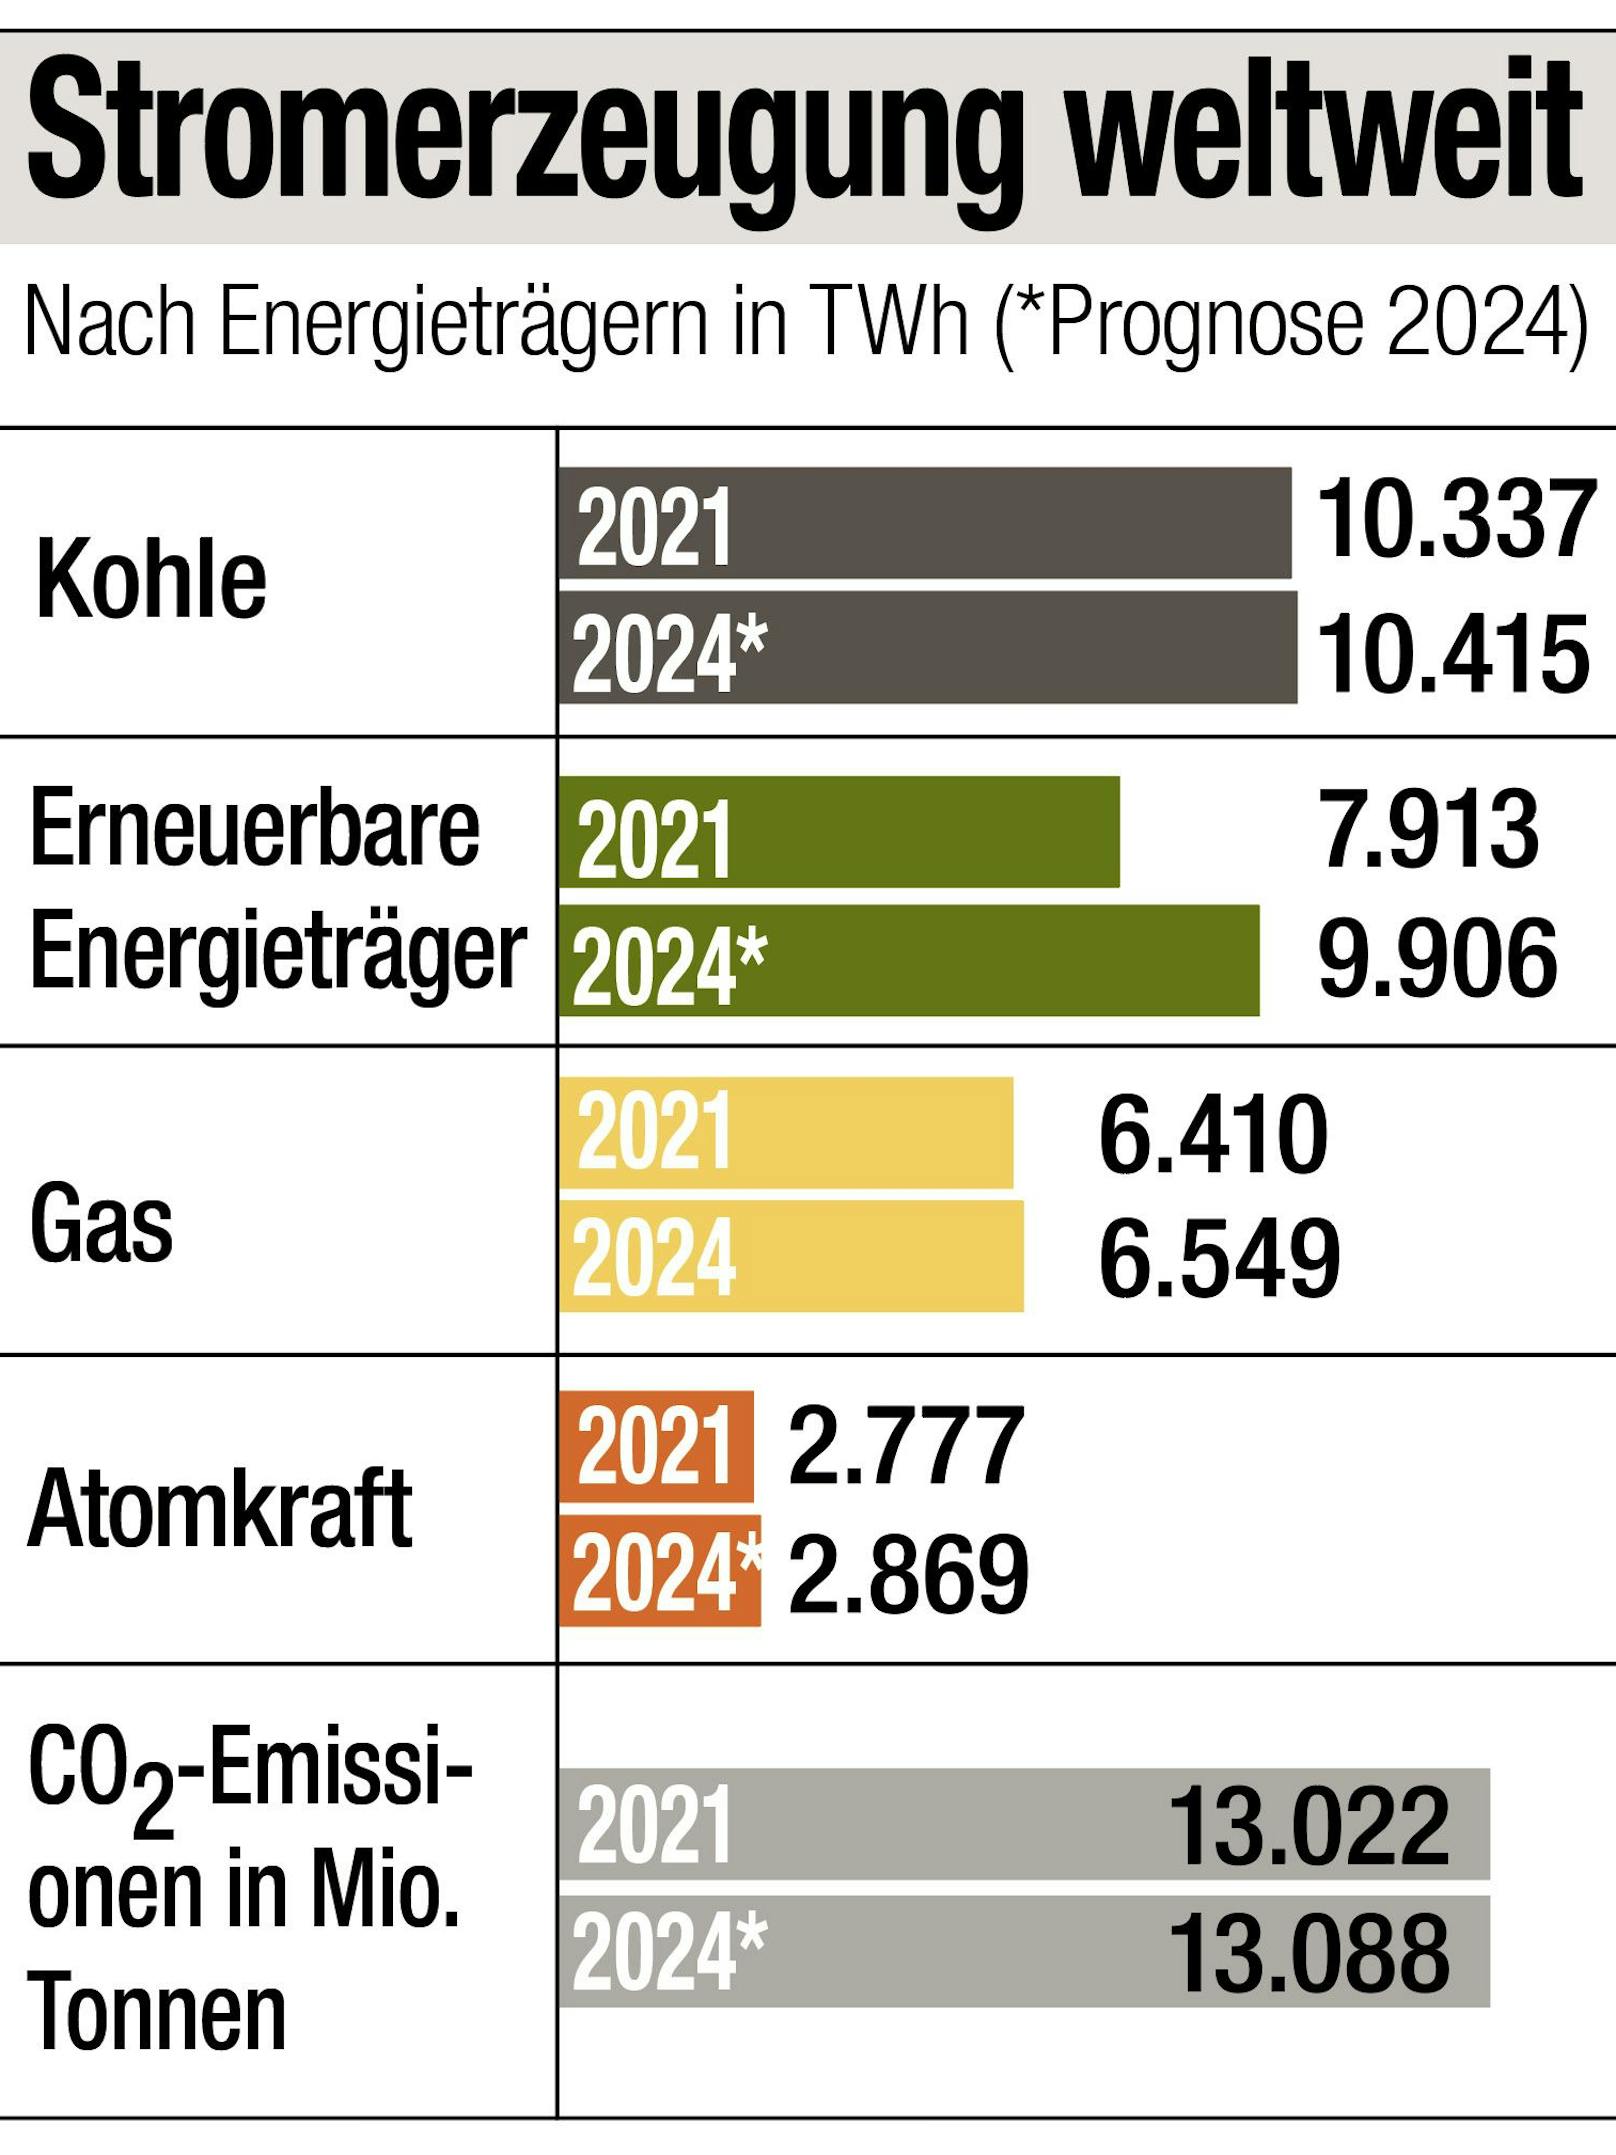 Die Grafik zeigt die Stromerzeugung weltweit nach Energieträgern und eine Prognose für 2024.